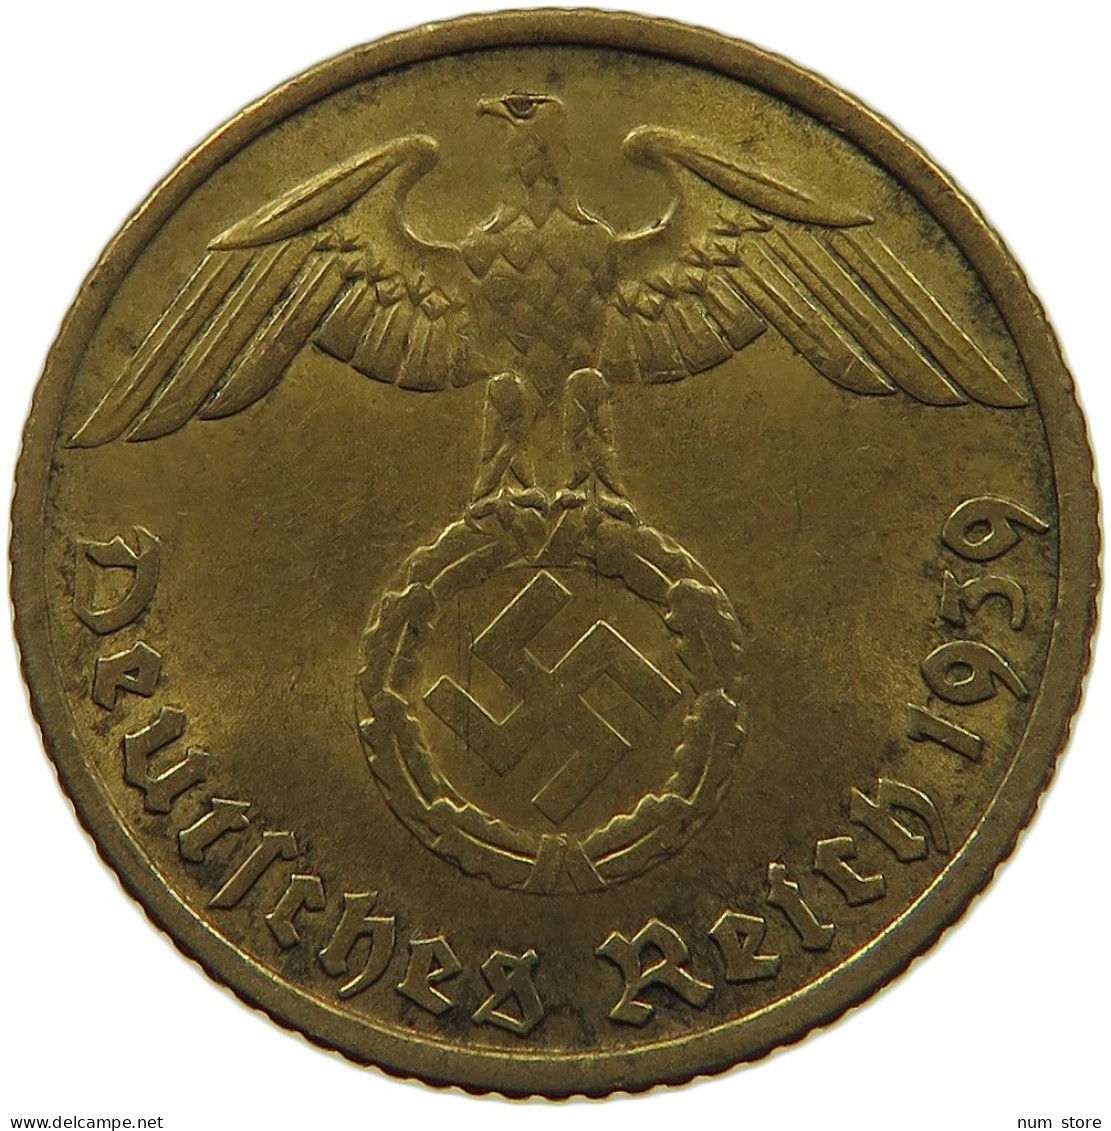 GERMANY 5 REICHSPFENNIG 1939 F #s091 0637 - 5 Reichspfennig